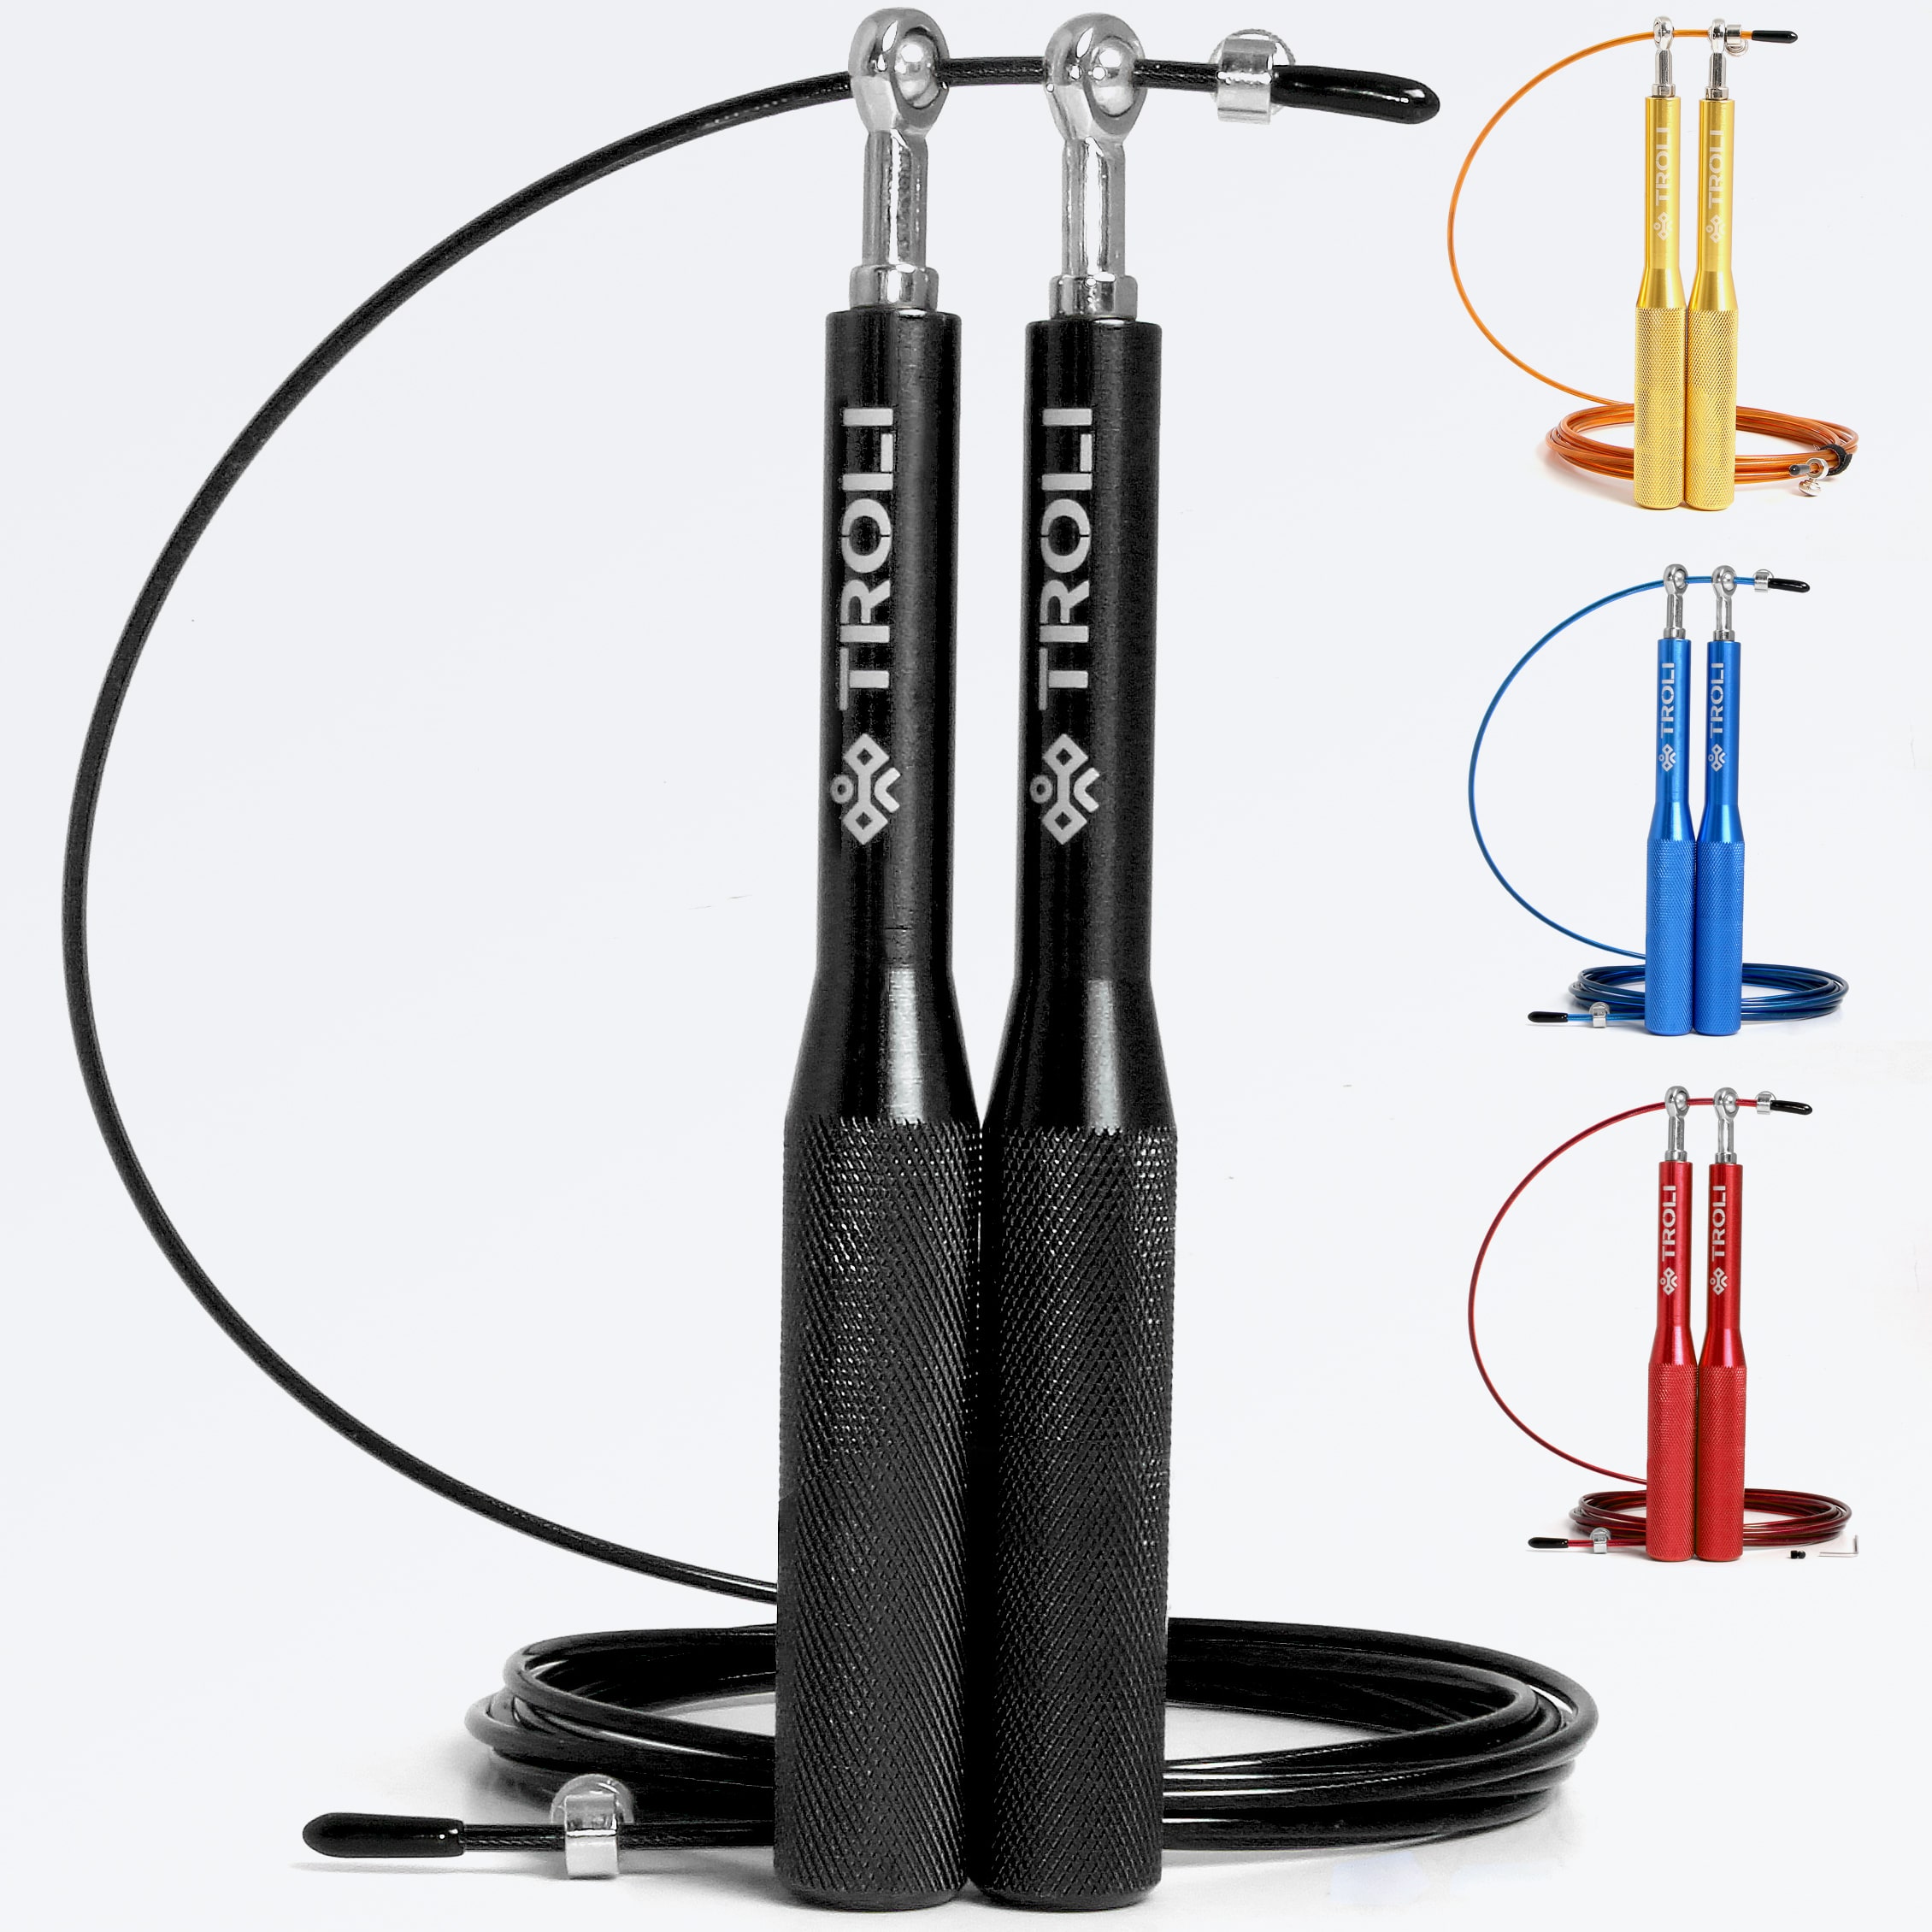 Швидкісна скакалка Crossfit для подвійних стрибків з металевими ручками — Скакалка для Подвійних Стрибків у Crossfit